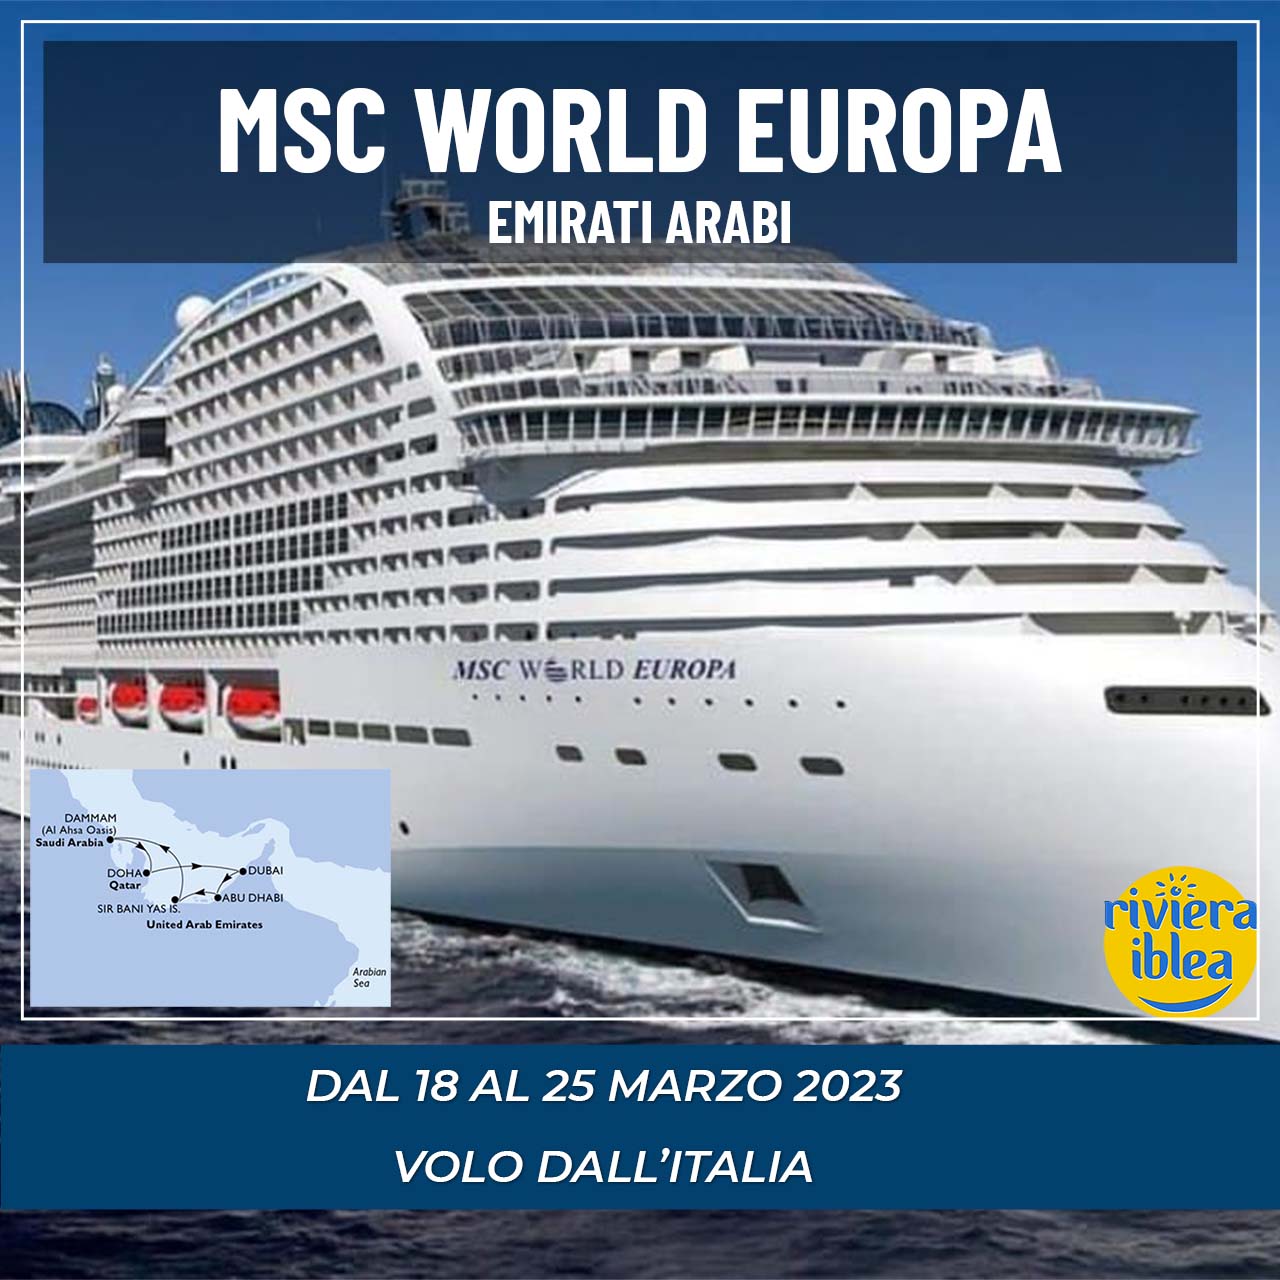 MSC WORLD EUROPA - Emirati Arabi